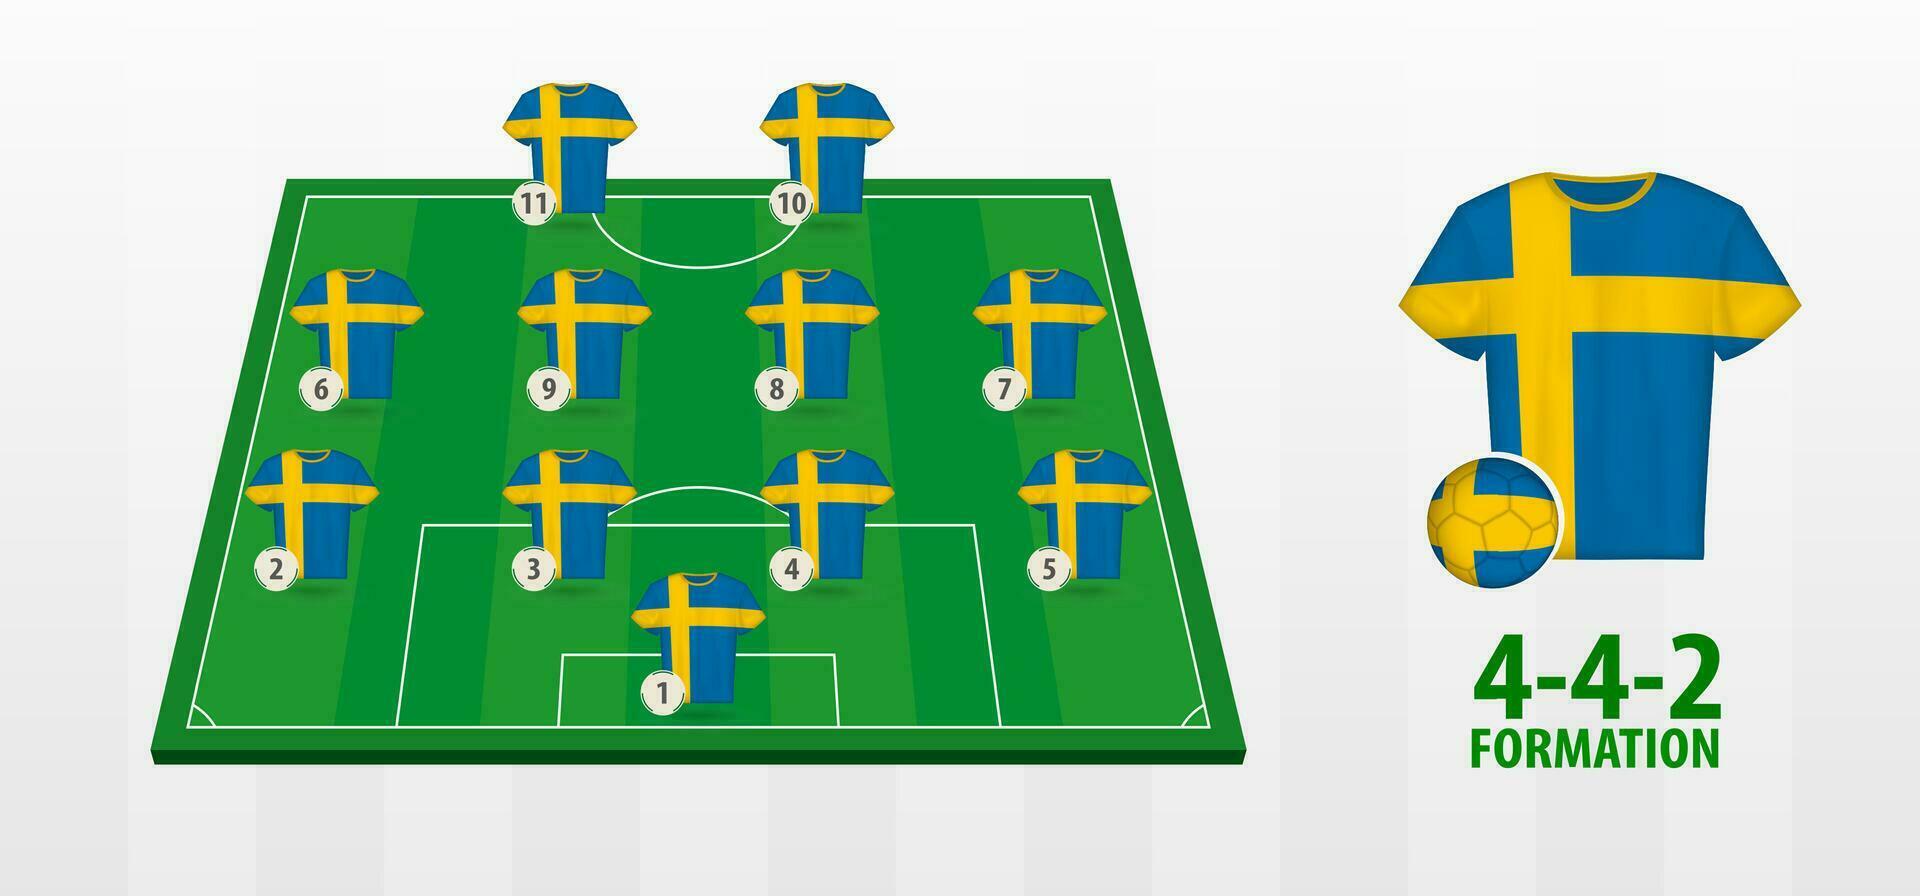 Schweden National Fußball Mannschaft Formation auf Fußball Feld. vektor